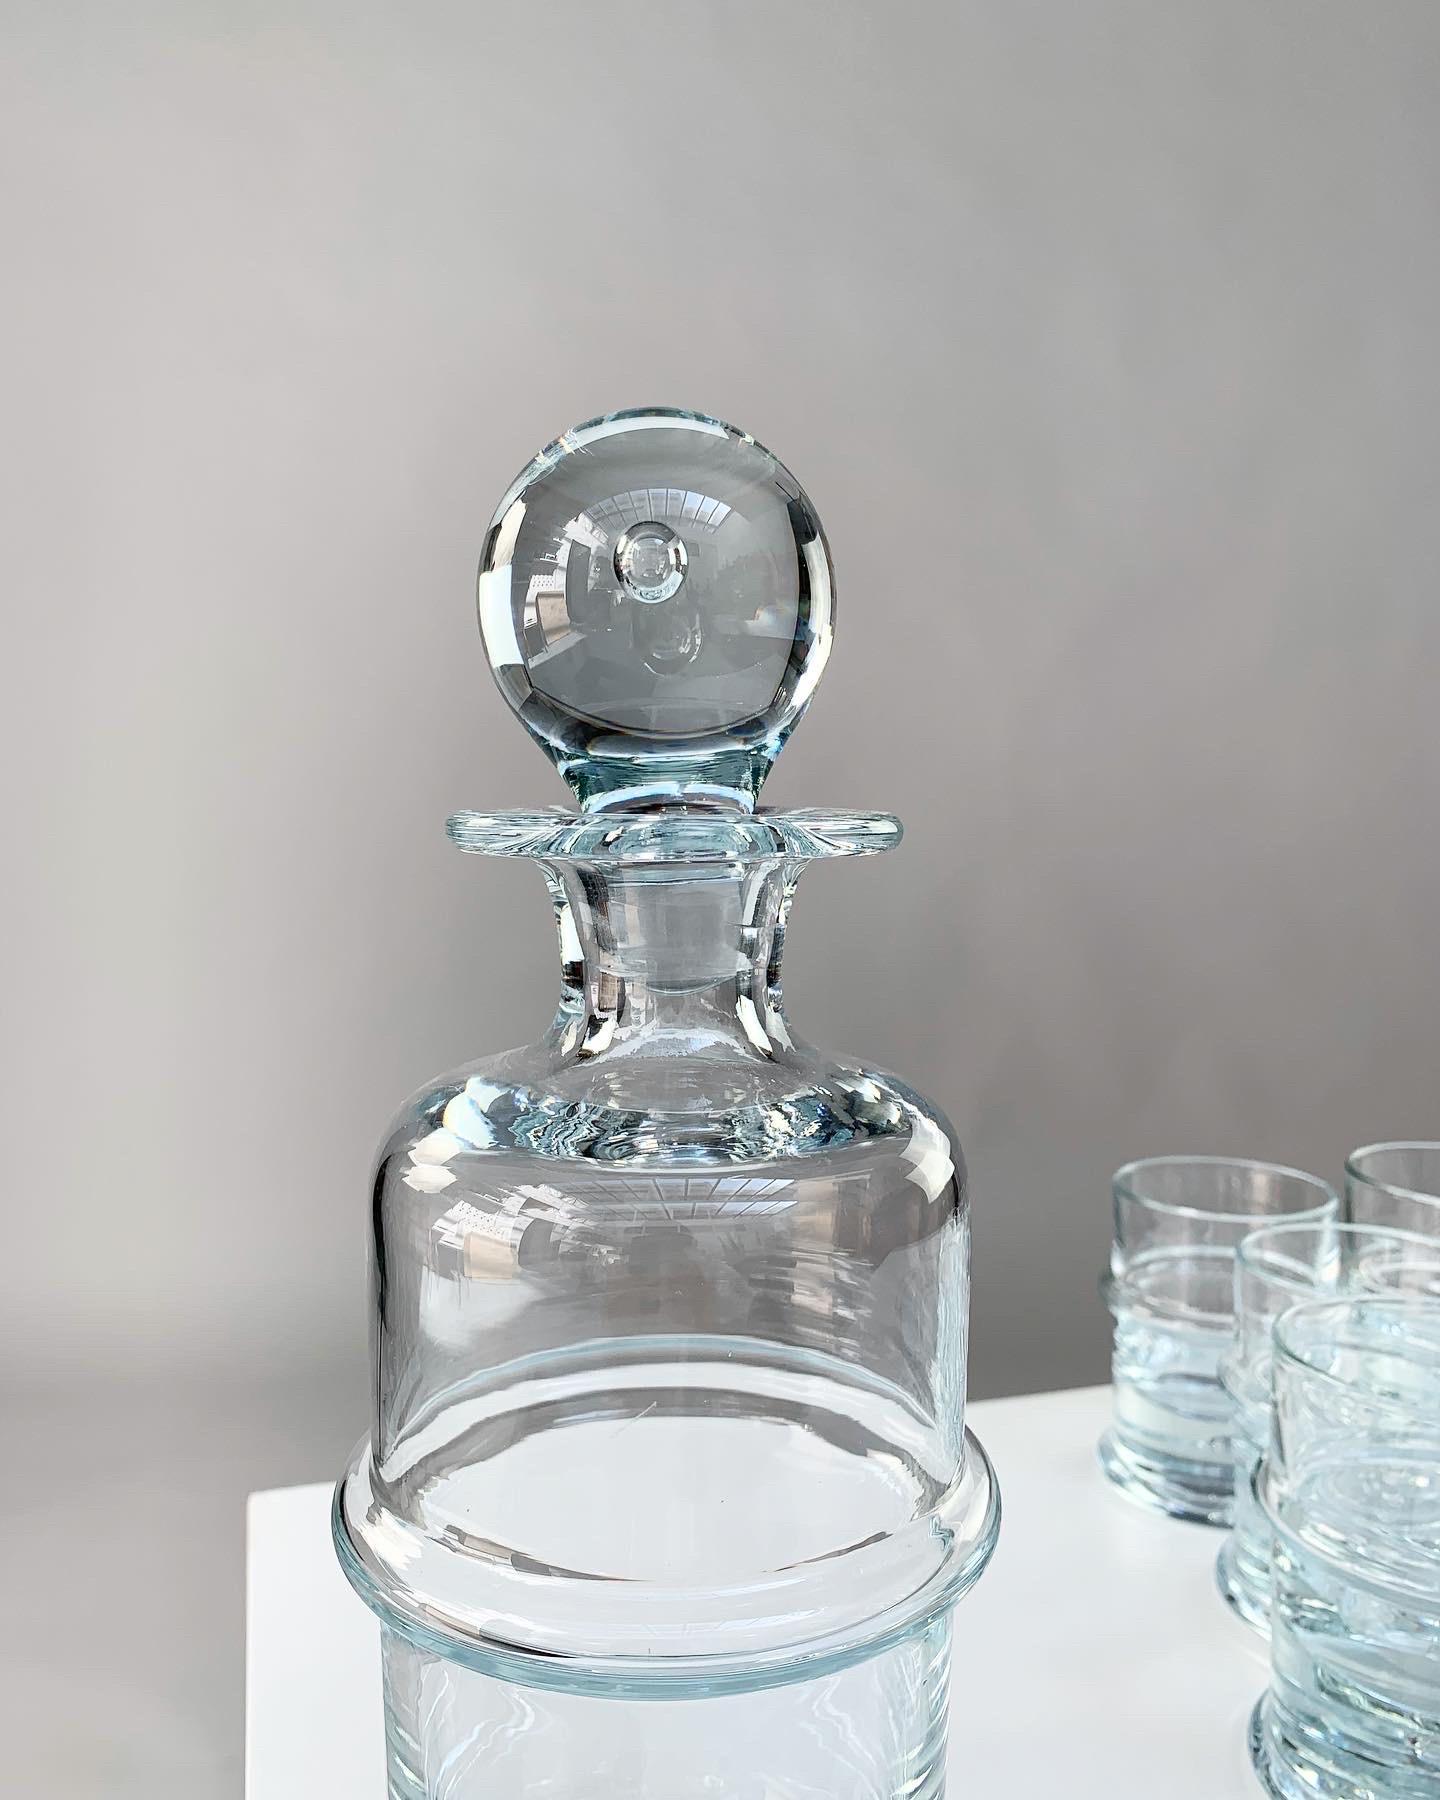 Holmegaard Crystal Glass Decanter Bottle & Tumbler Glasses Regiment Sidse Werner 2